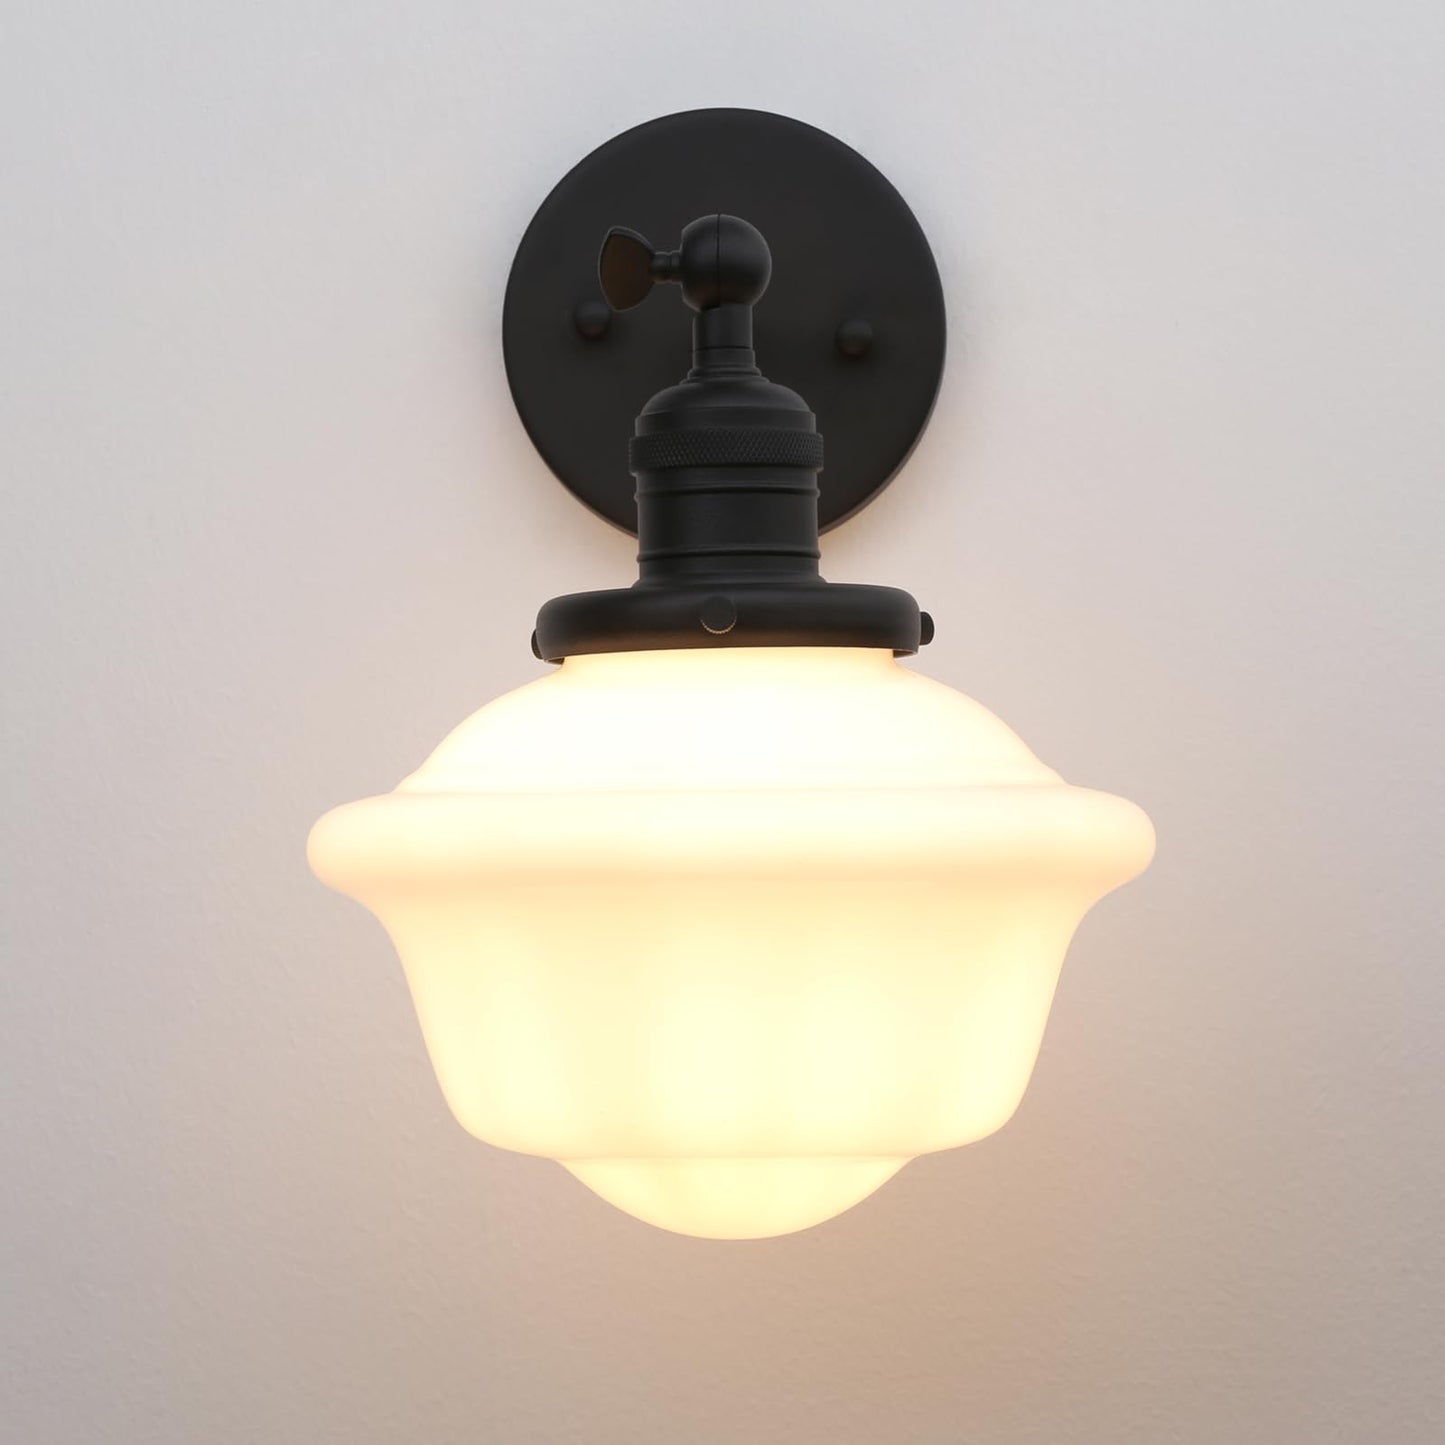 Vintage Wall Sconce Lamp, Rustic Style Bathroom Wall Vanity Lighting